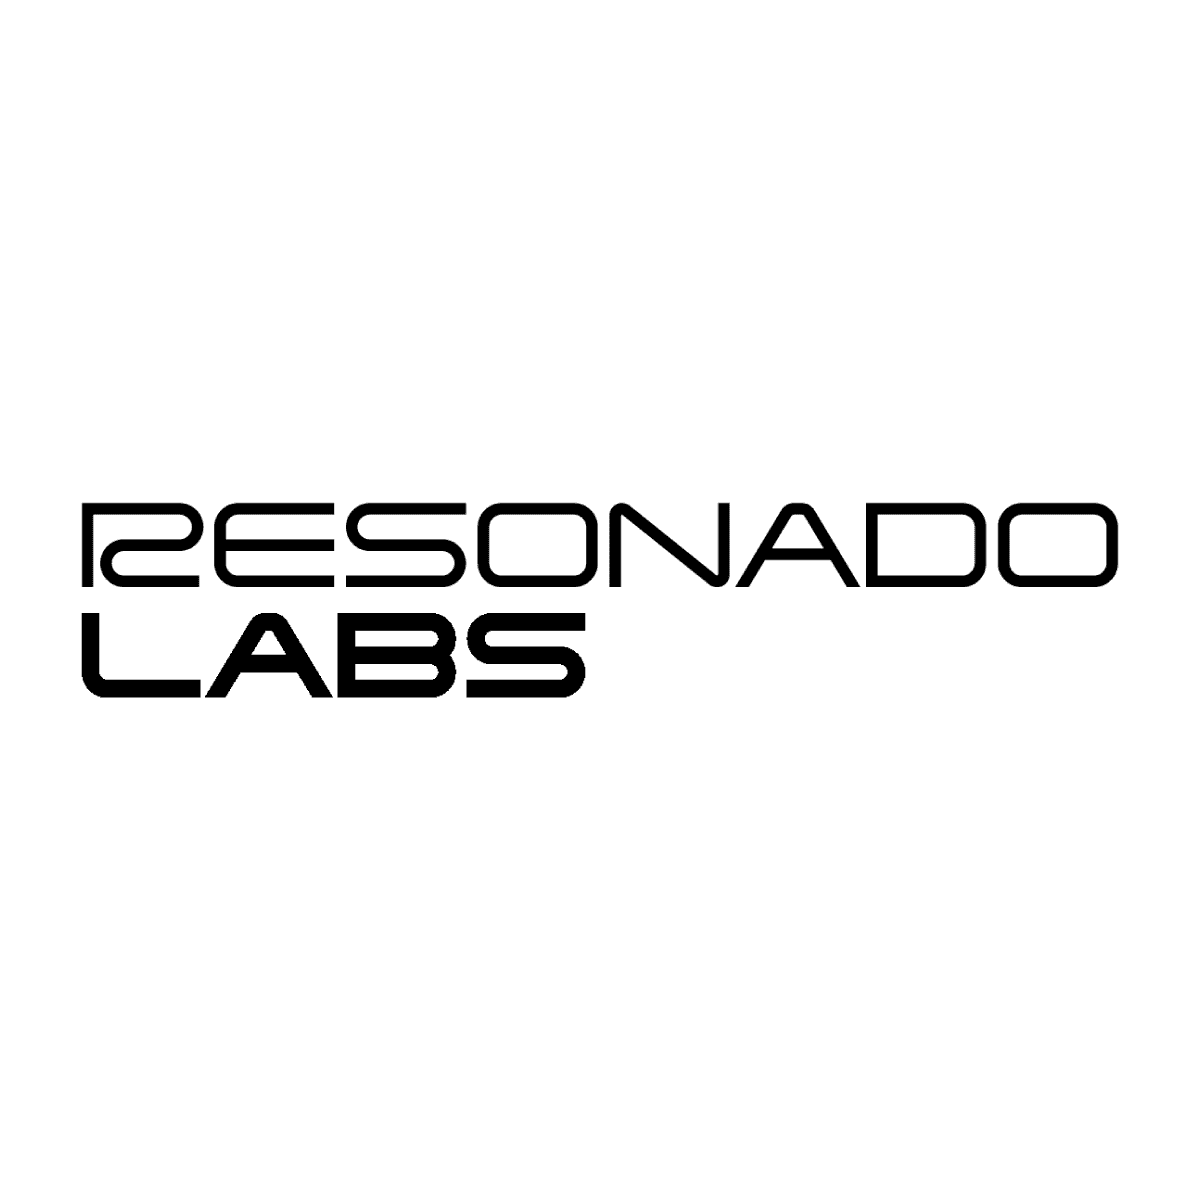 Resonado Labs logo